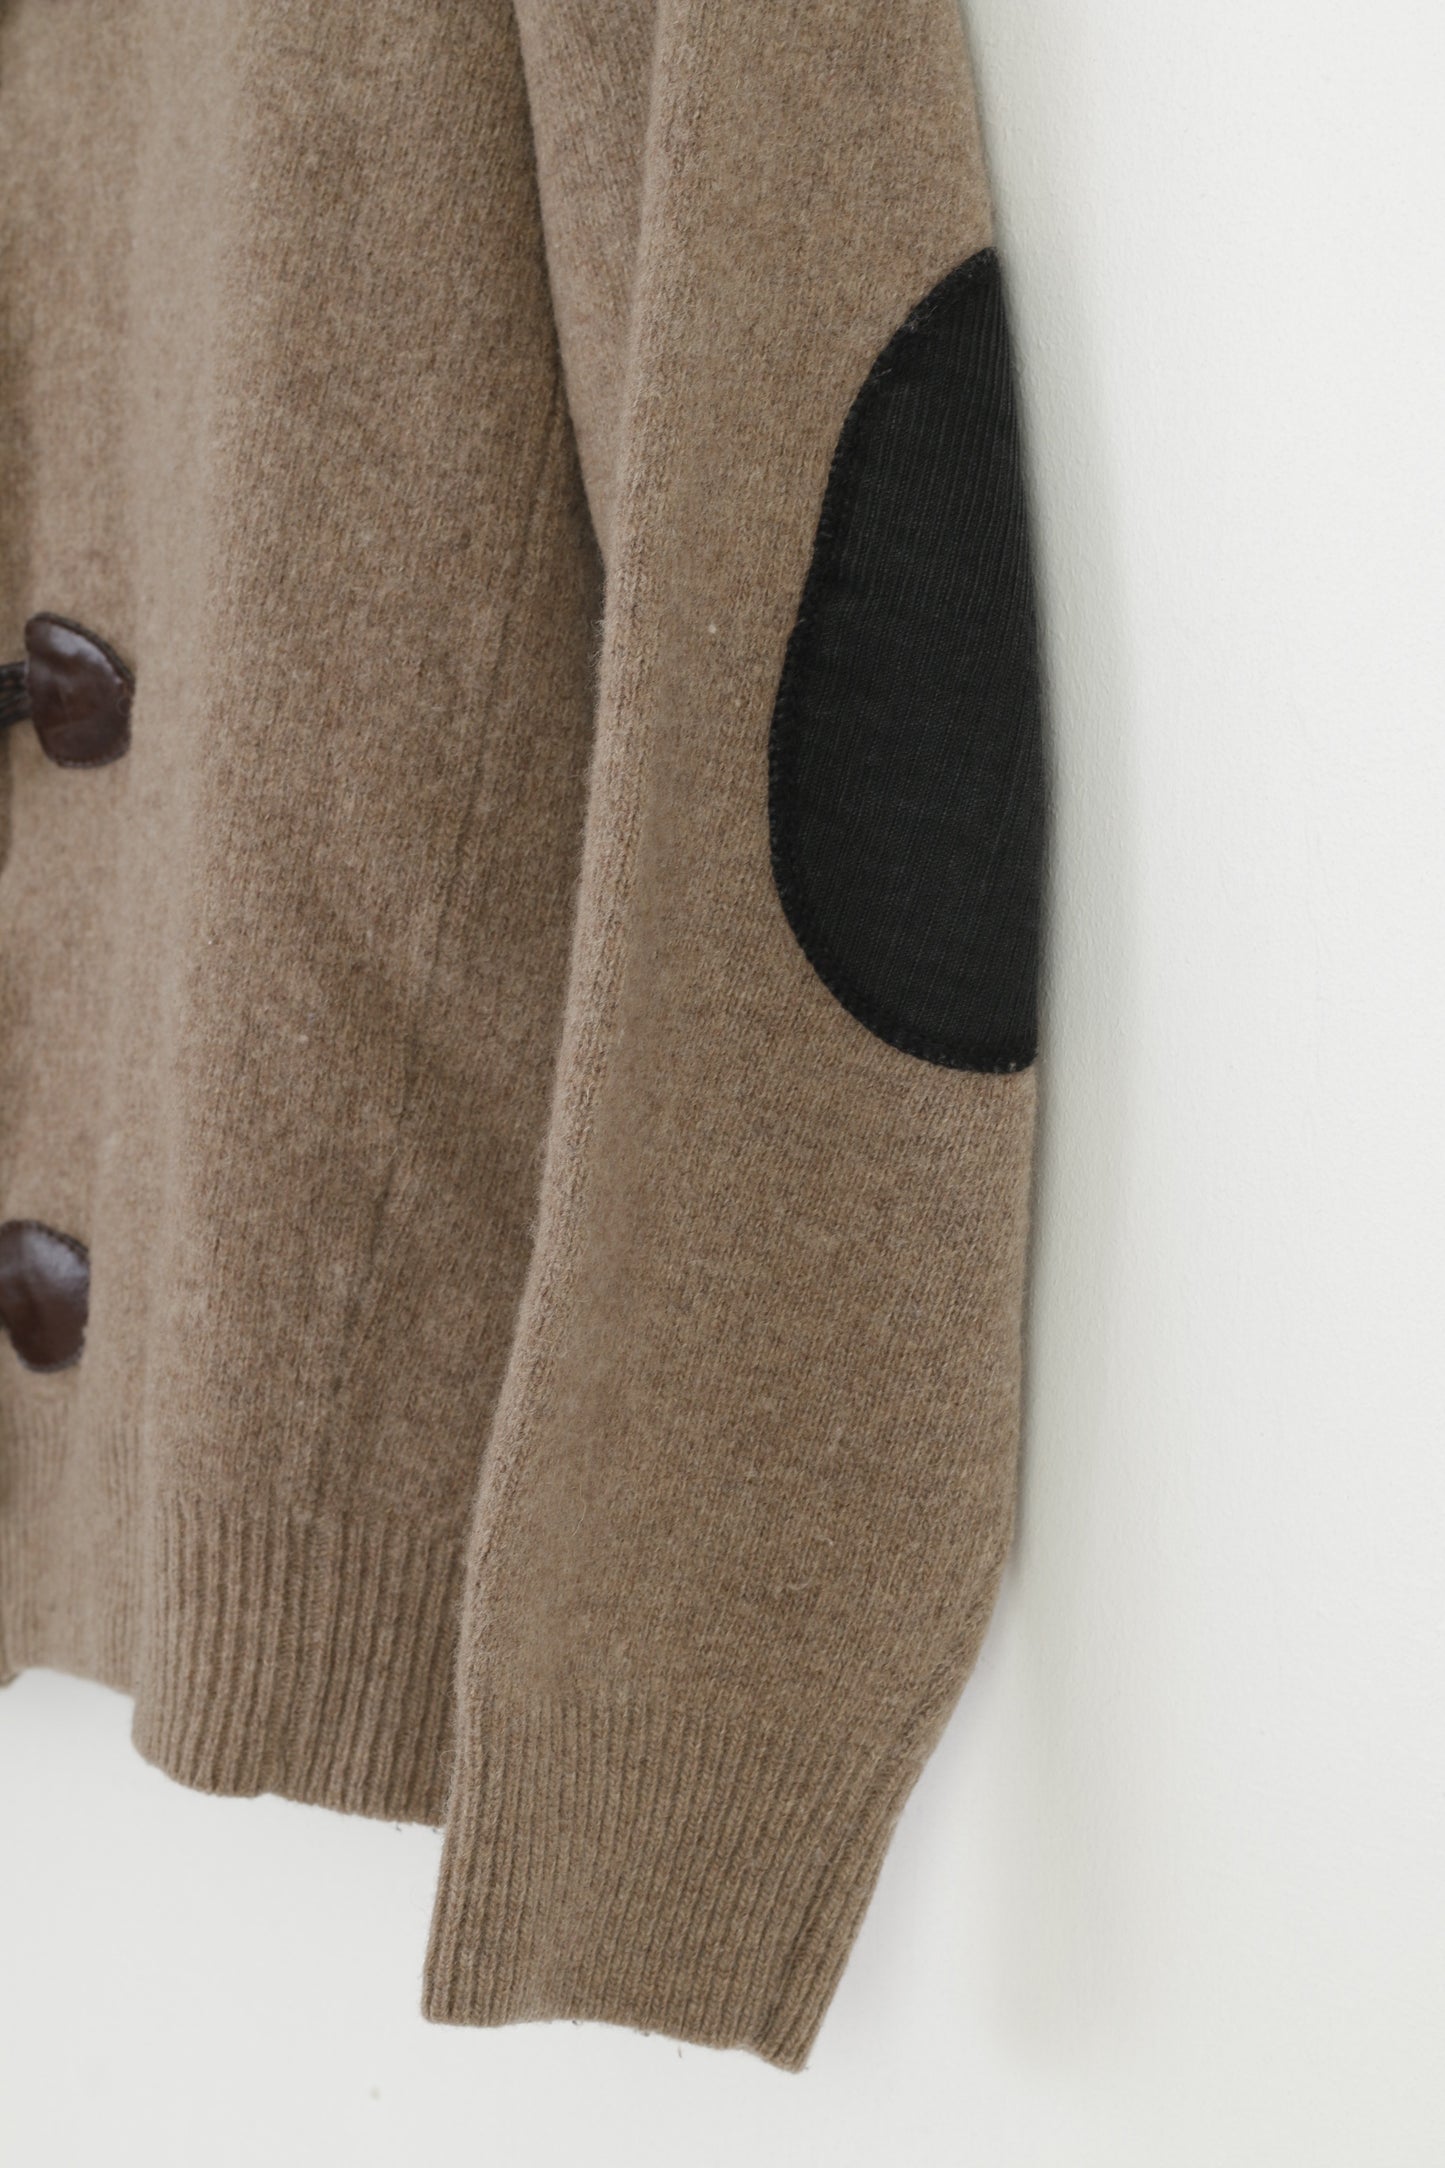 Jezequel Ragazzi L Felpa per bambini in lana marrone con cerniera intera manica lunga con bottoni e colletto